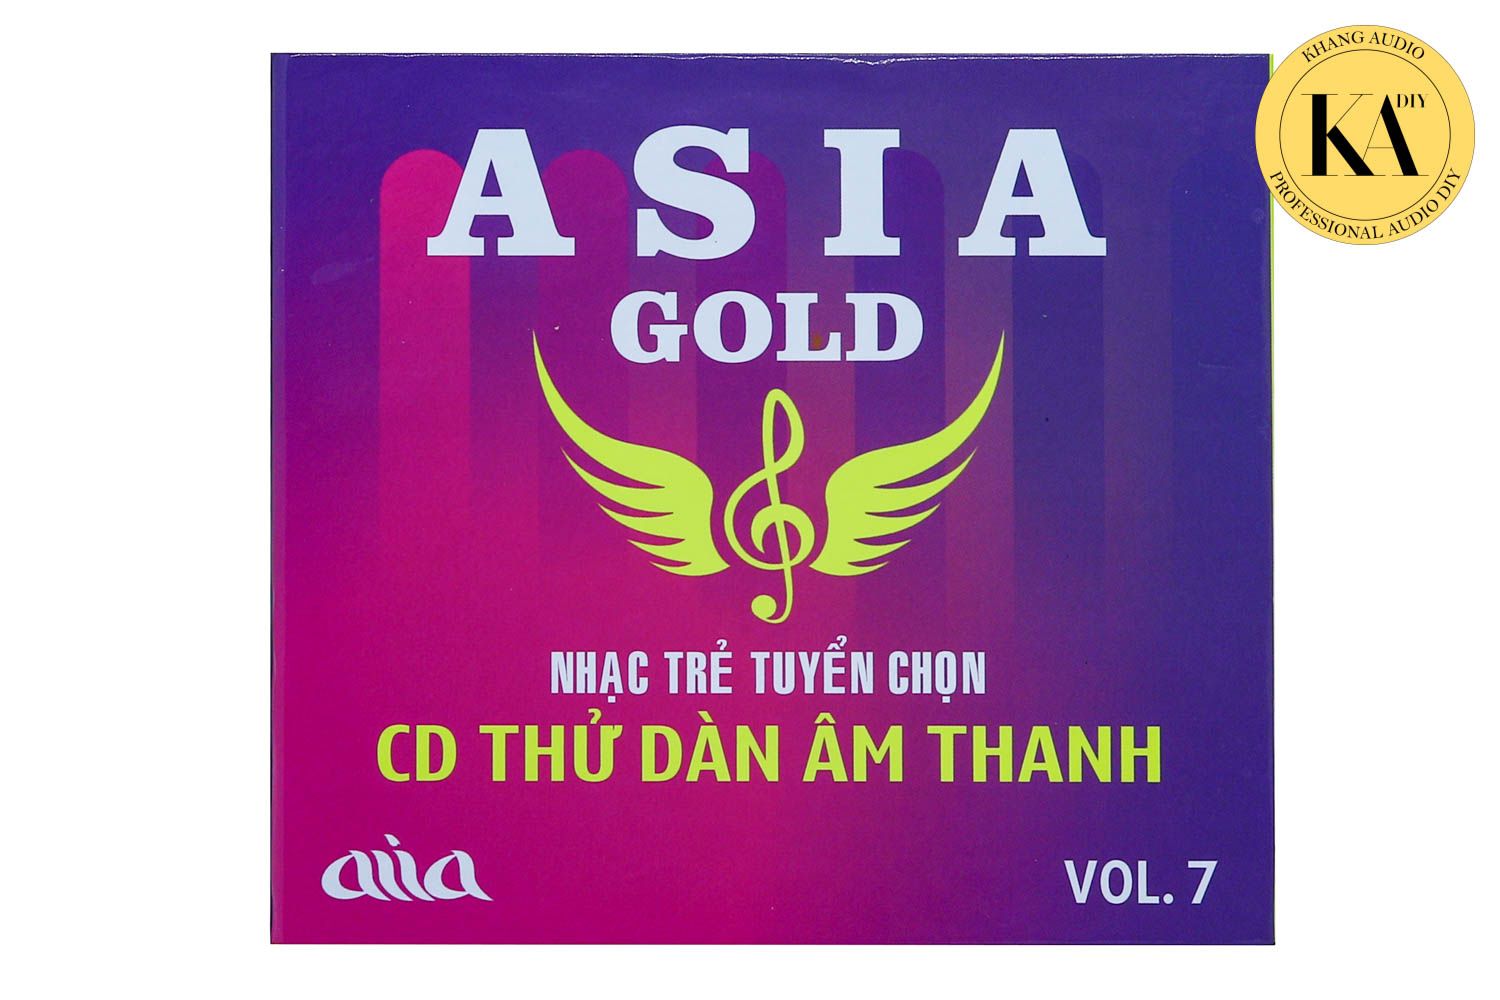 Nhạc Vàng Tuyển Chọn - ASIA GOLD Vol.7